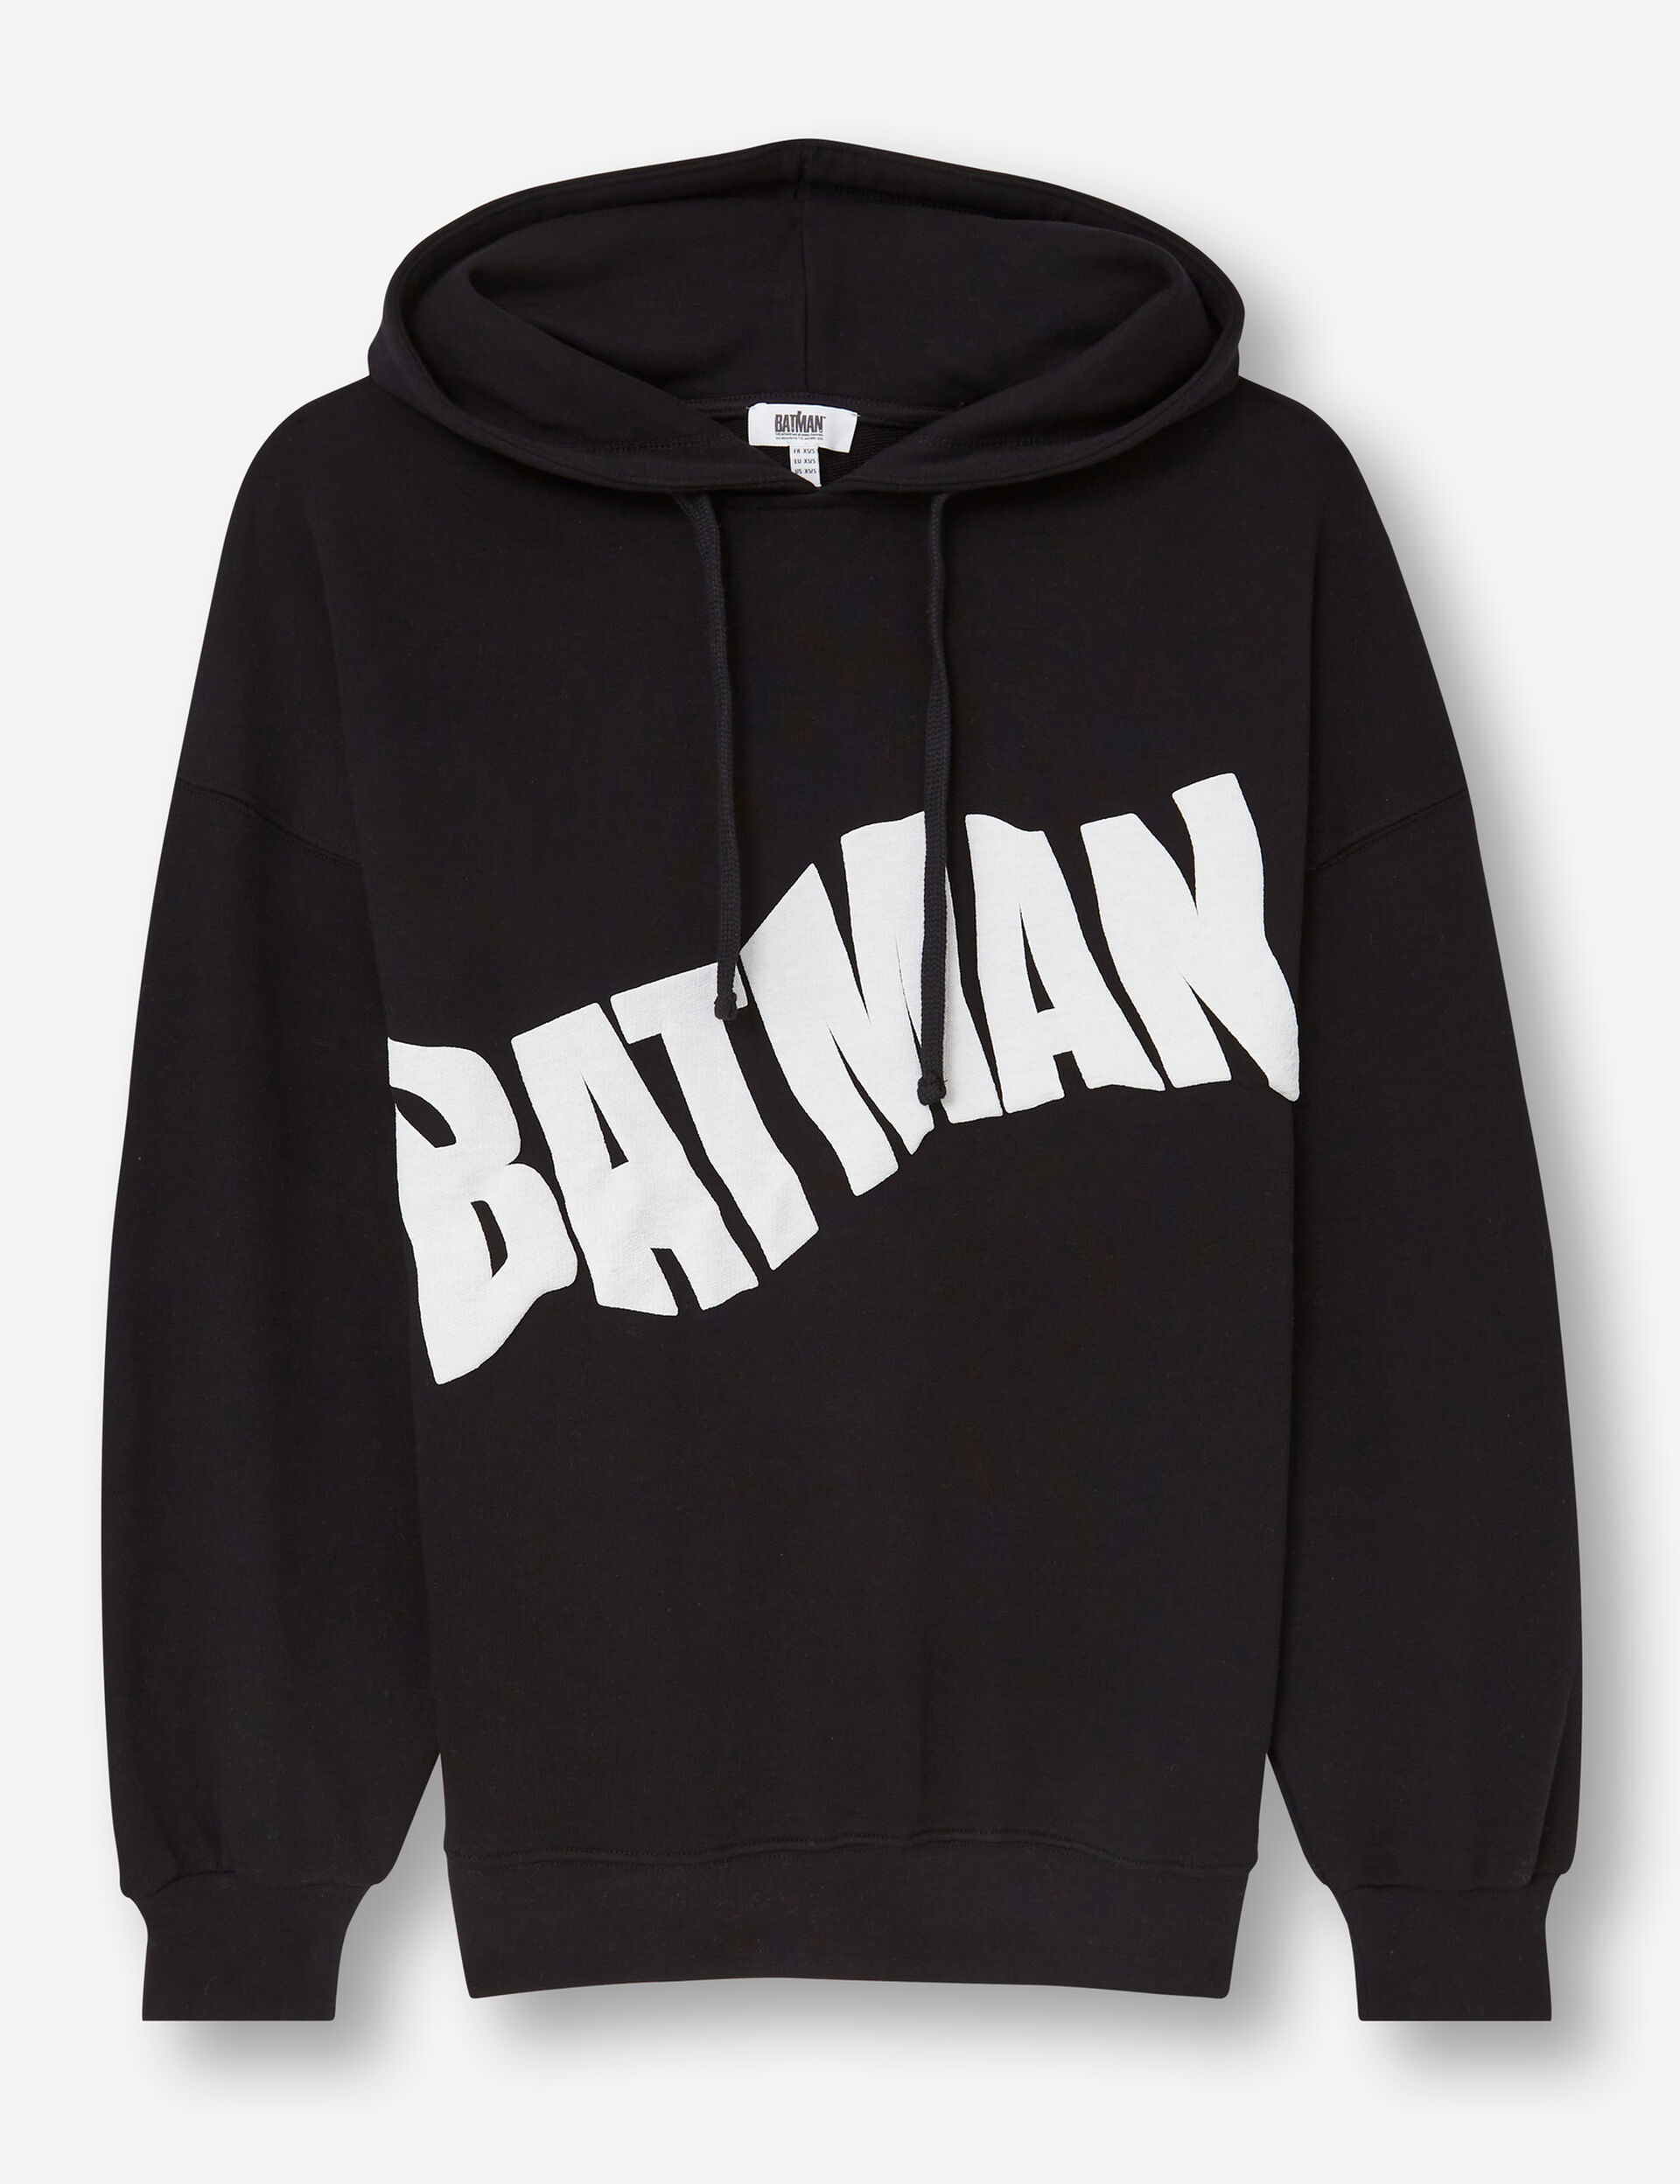 Batman hoodie